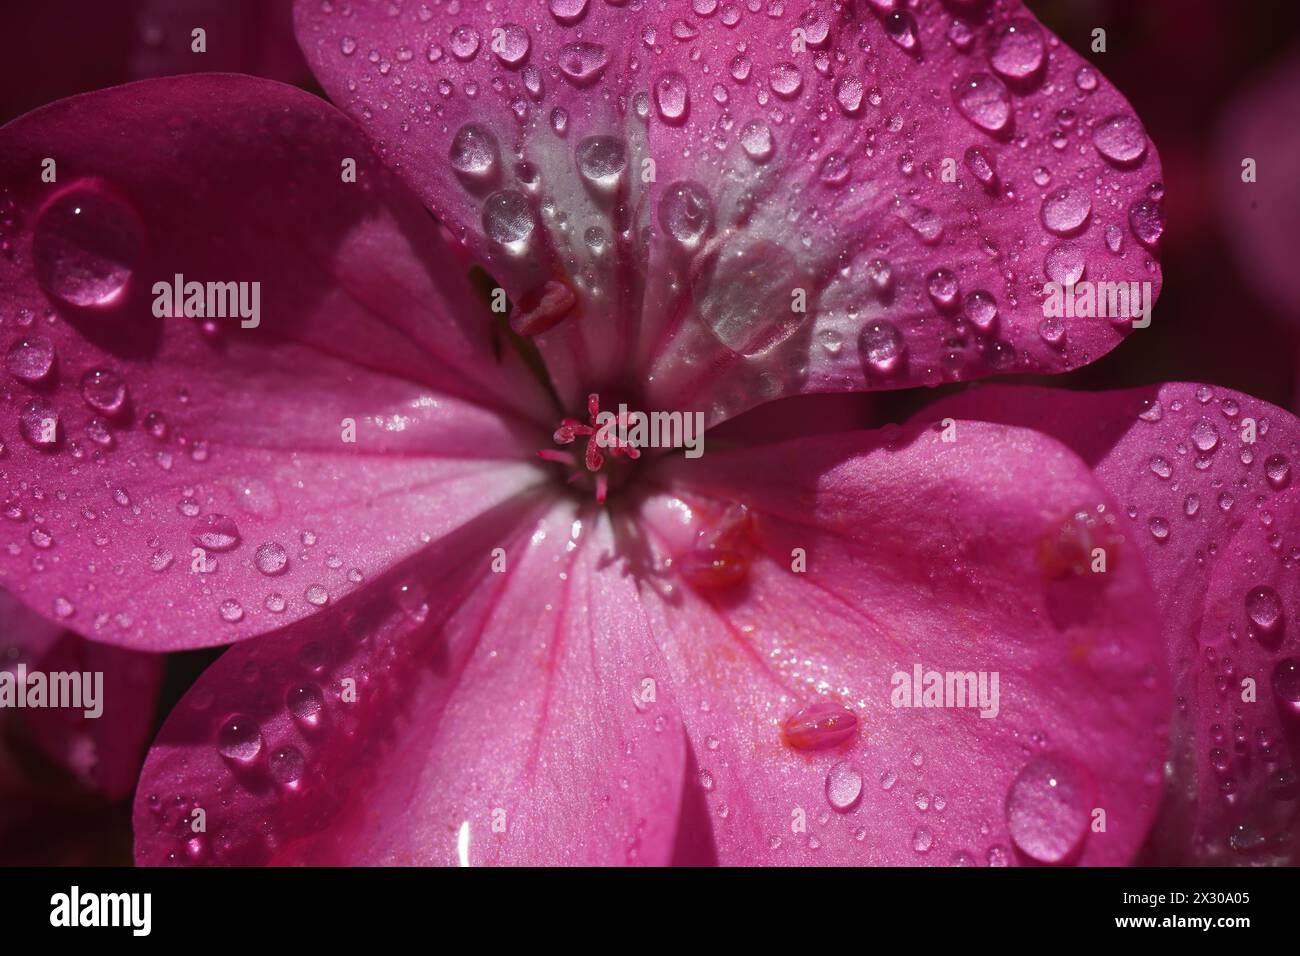 Pink flower of Geranium, Pelargonium, Geraniaceae,close up Stock Photo